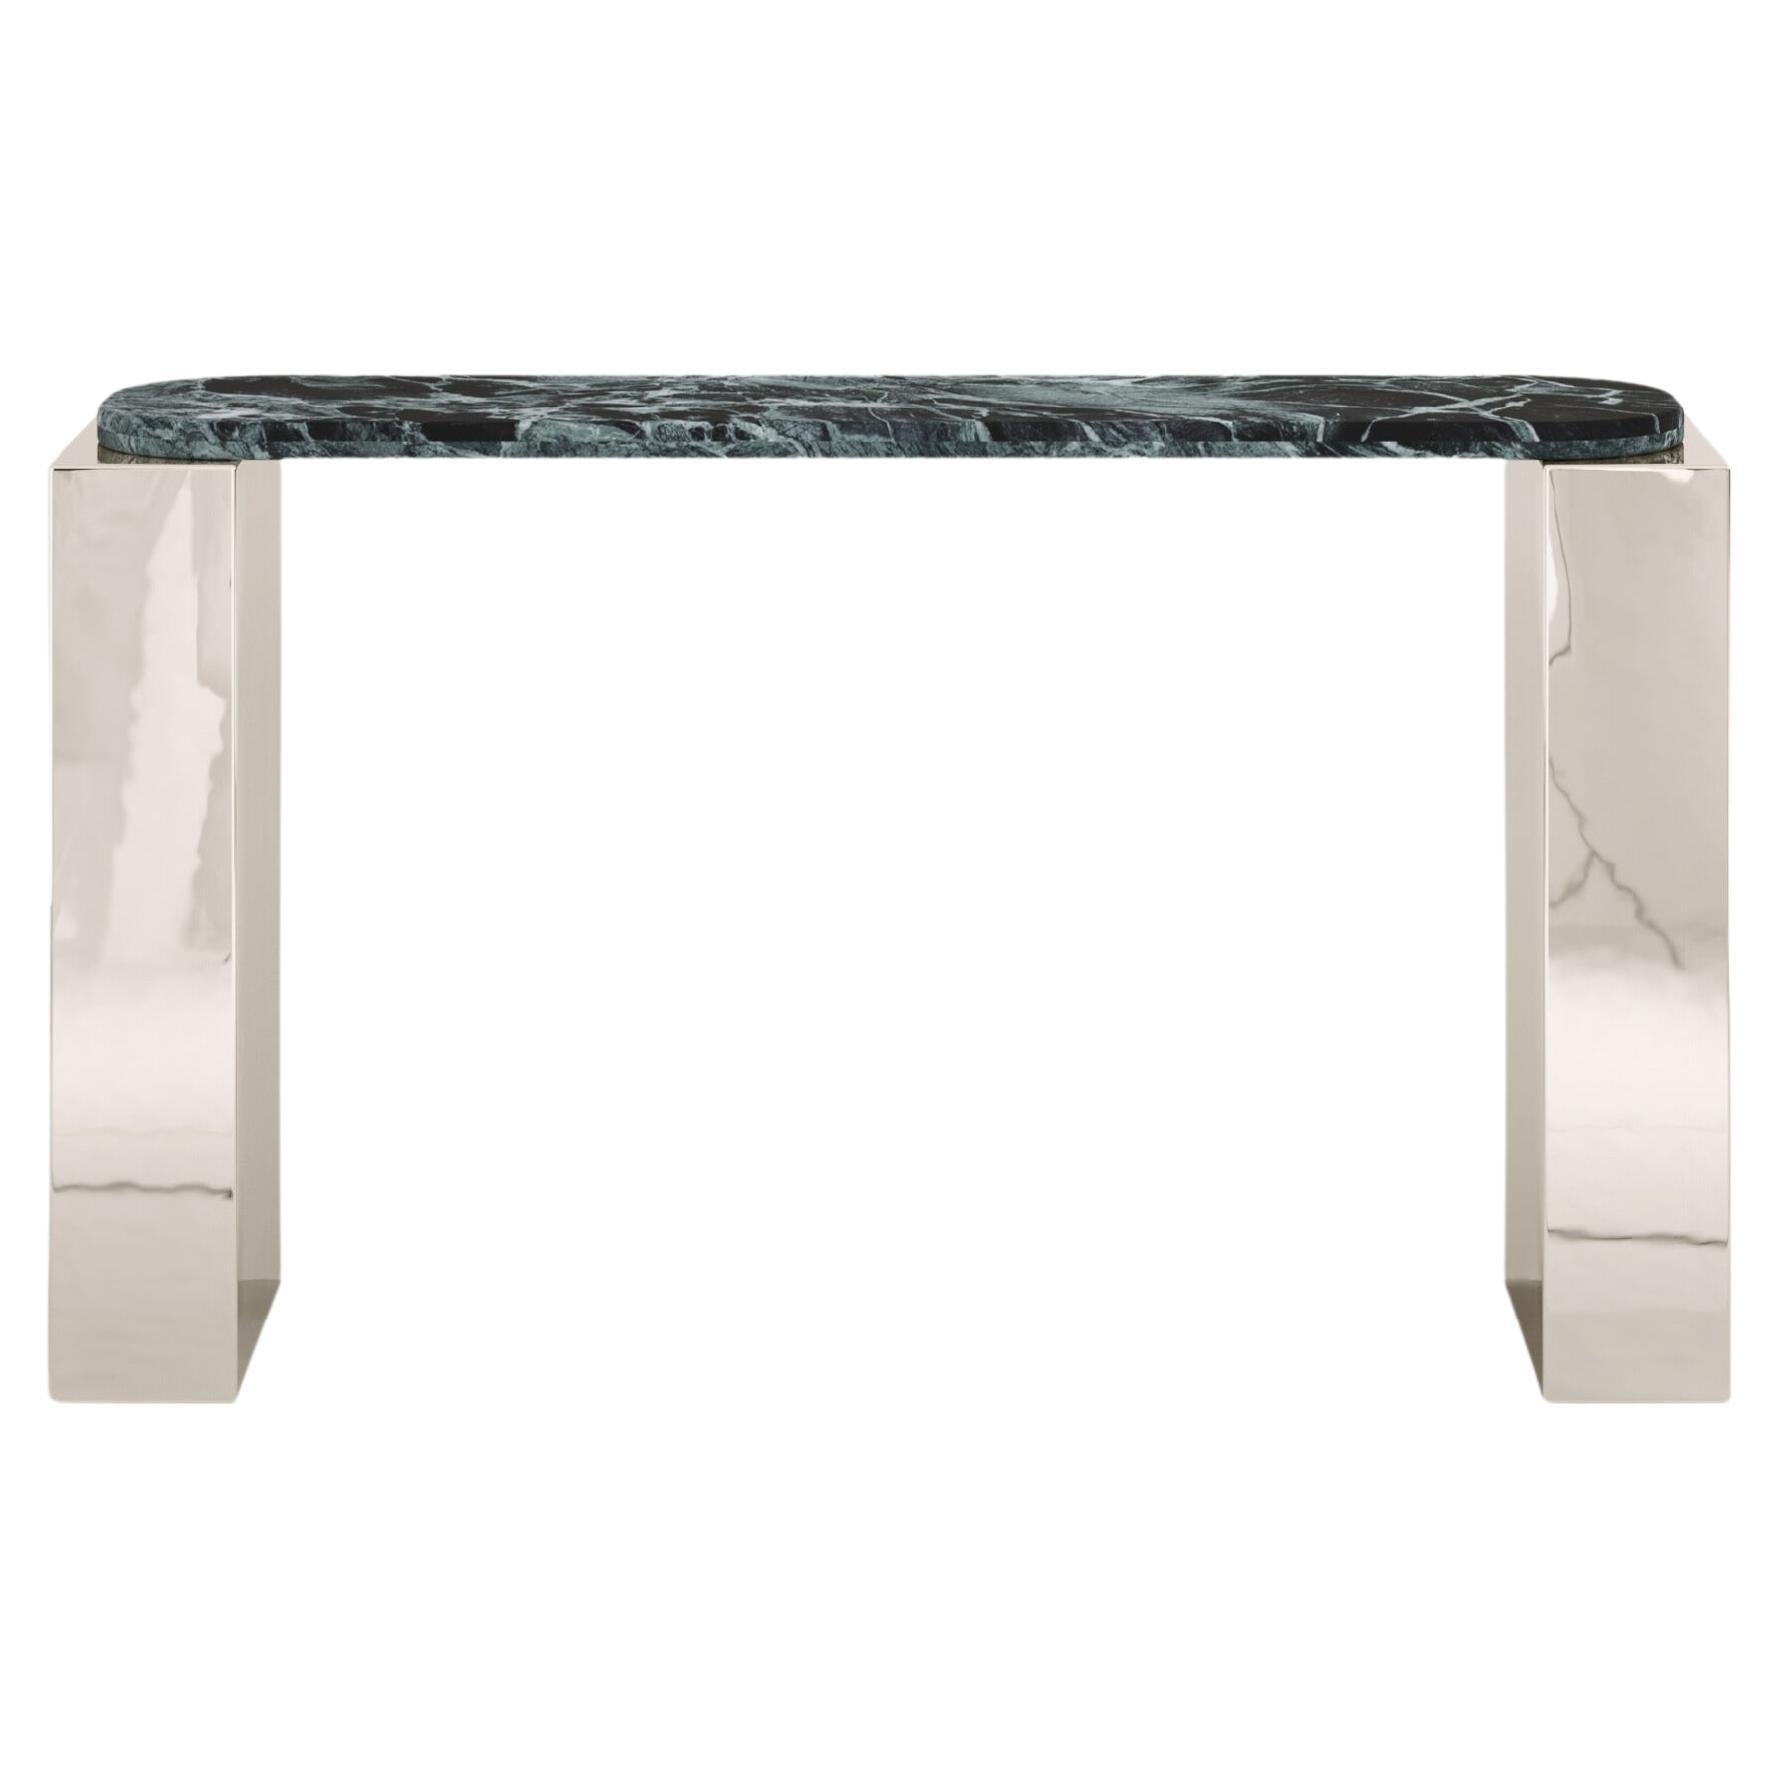 FORM(LA) Cubo Console Table 50”L x 17”W x 36”H Verde Alpi Marble & Chrome